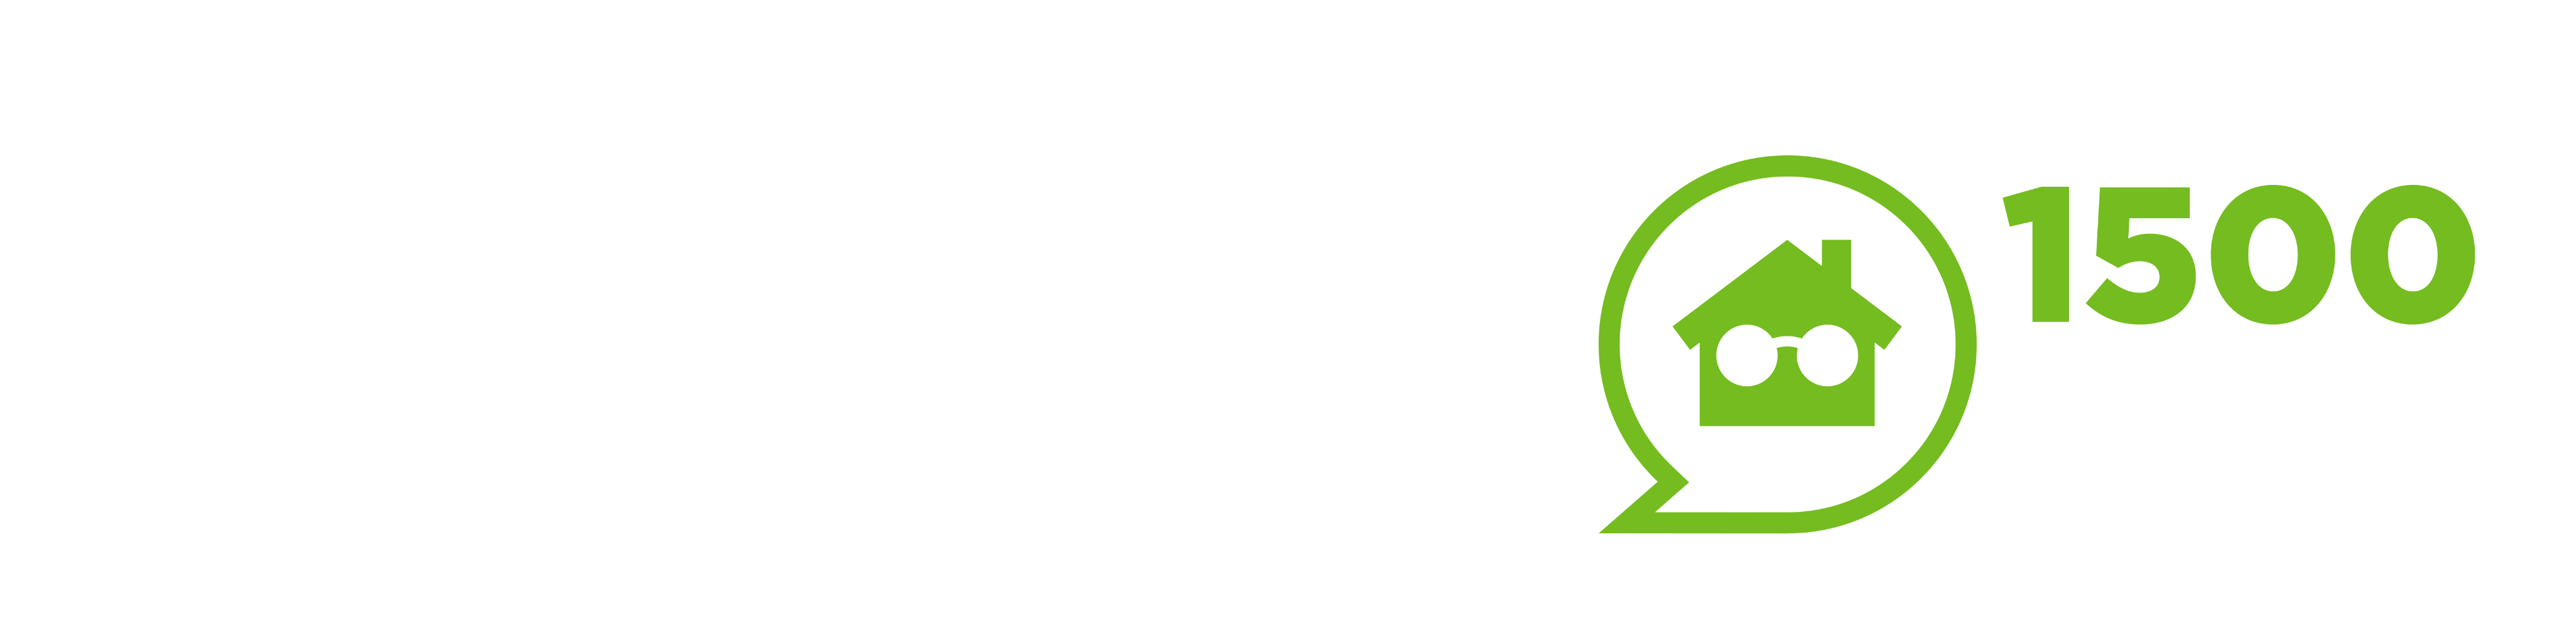 The GEM Logo Reversed